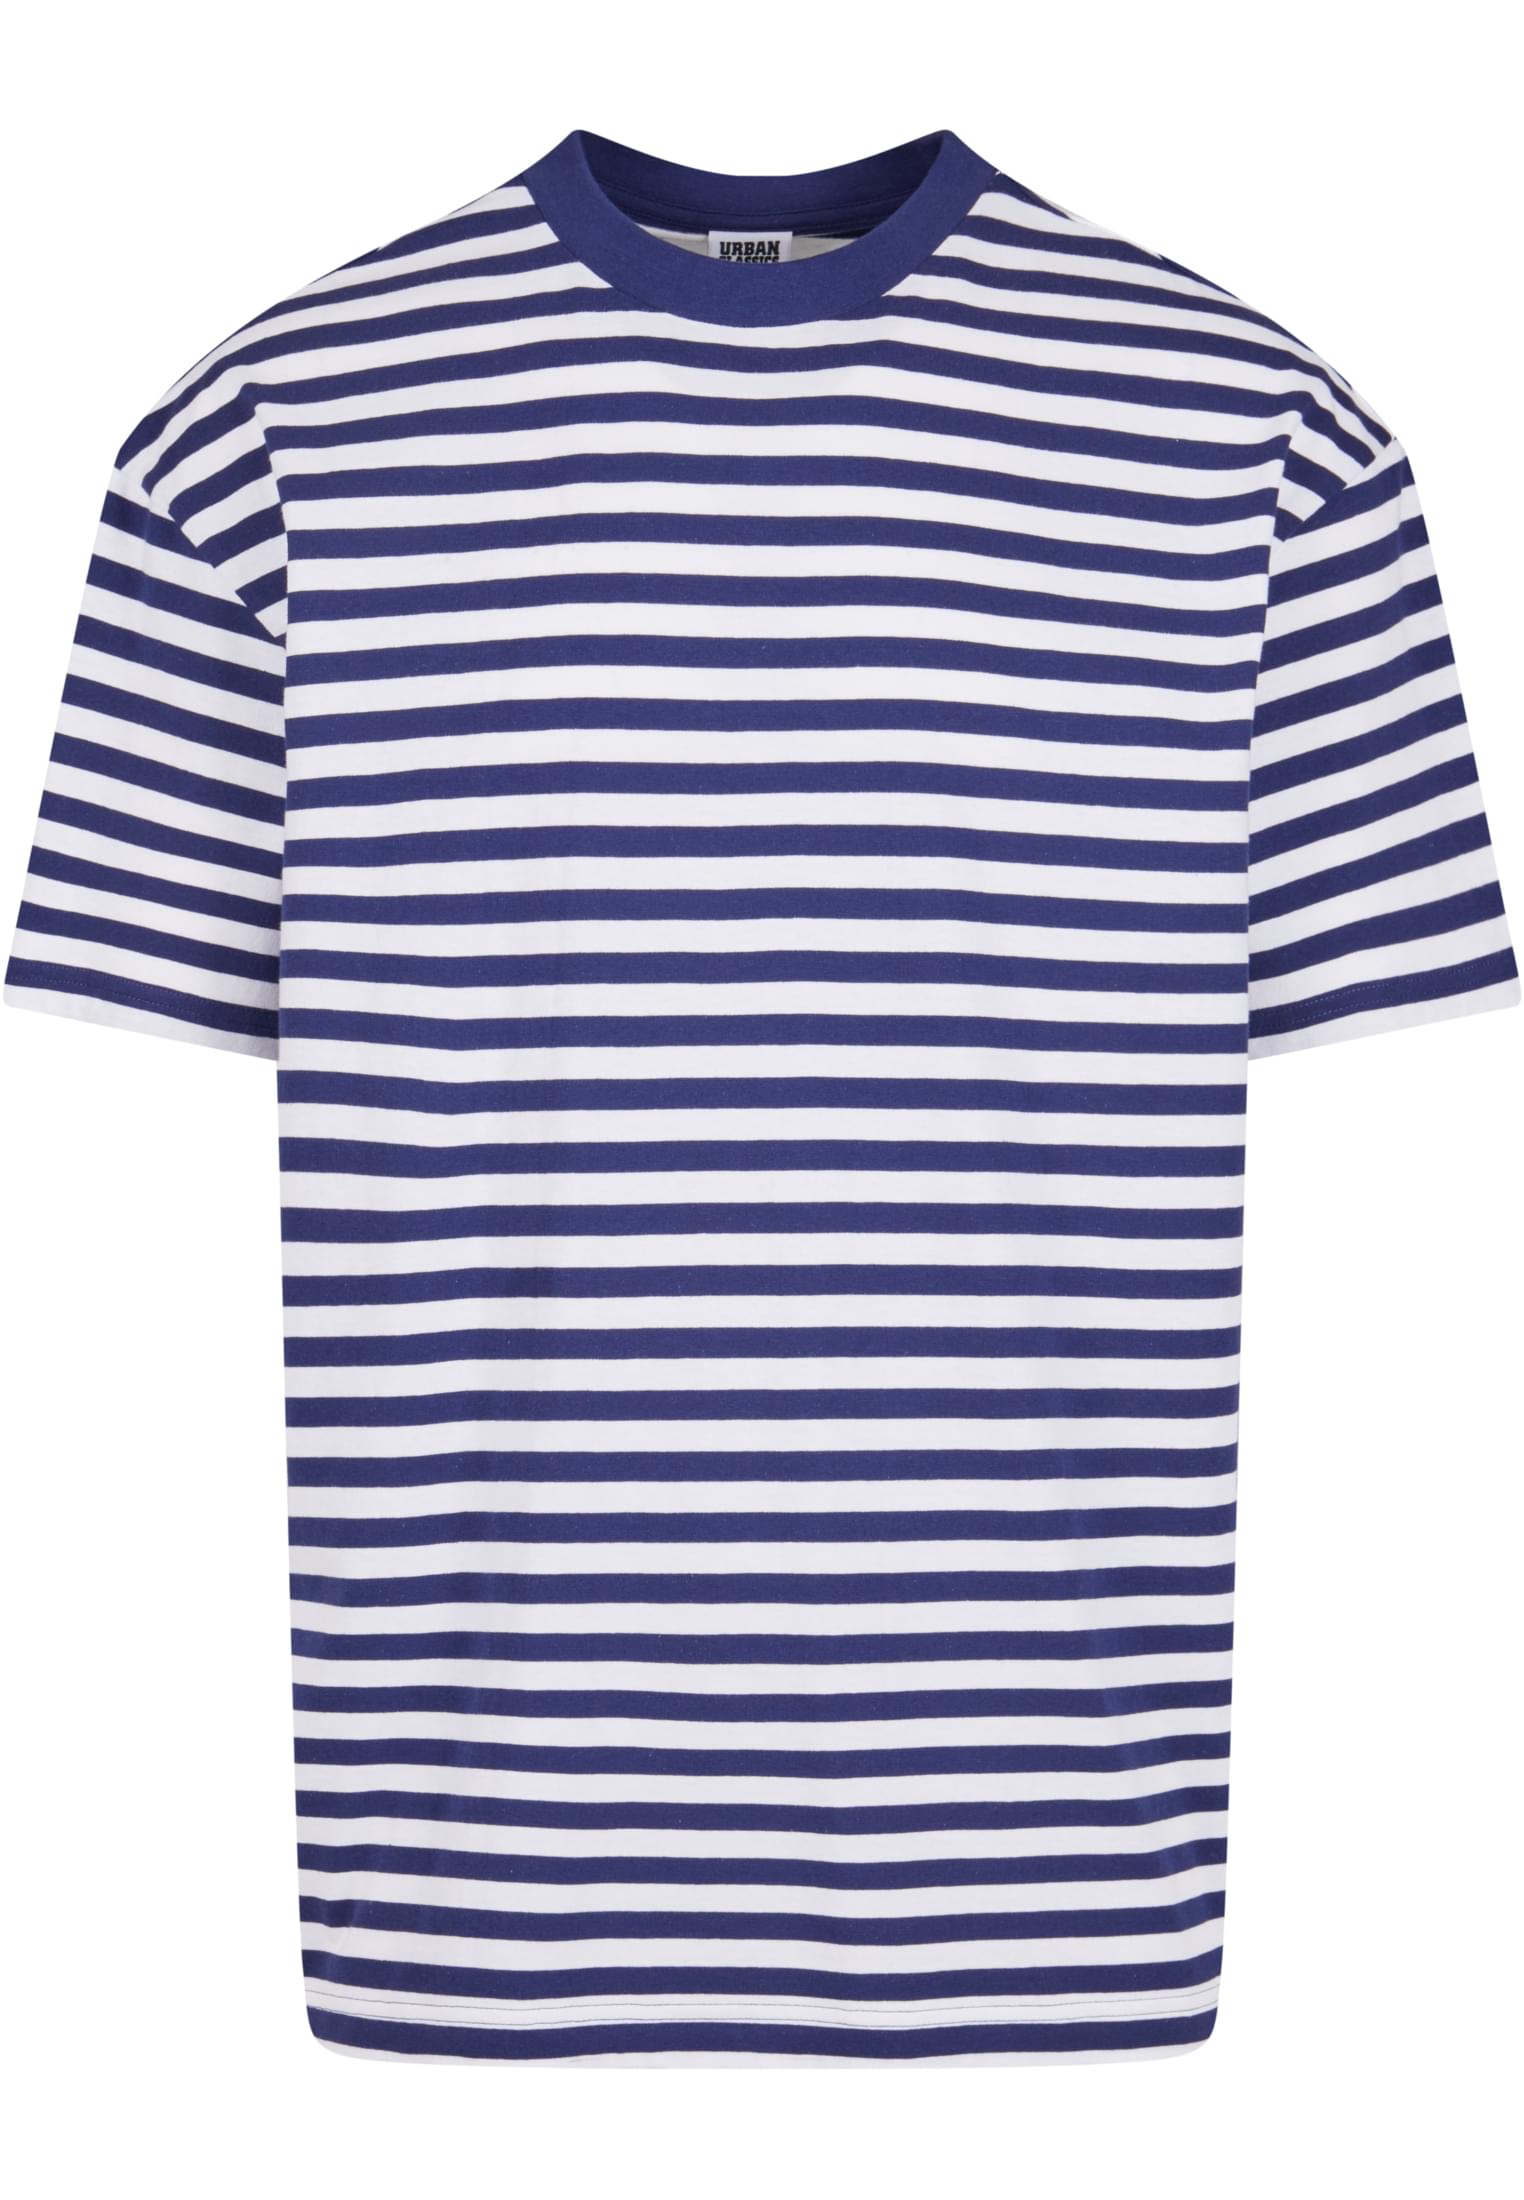 Men's T-shirt Regular Stripe - white/navy blue